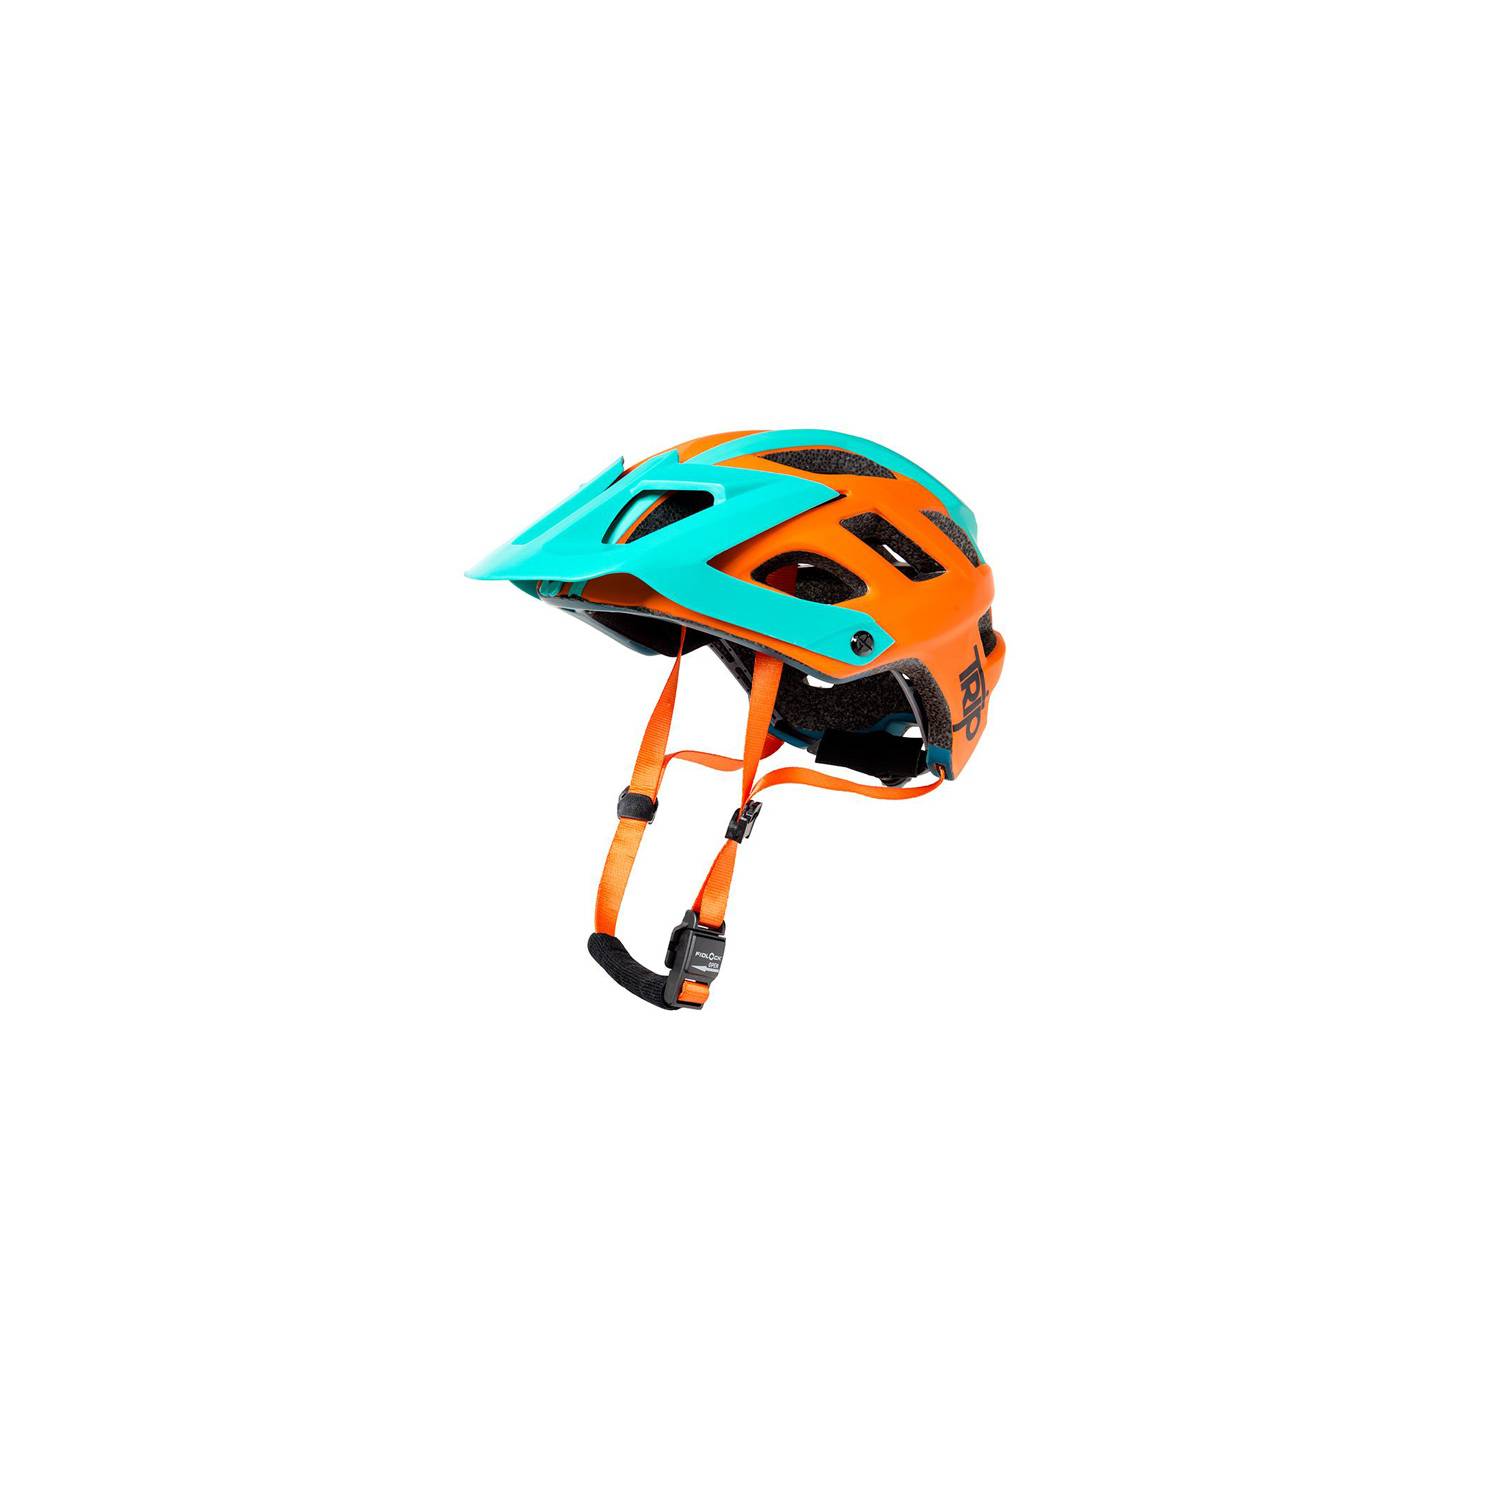 TRIP Casco Bicicleta Enduro Orange Talla SM